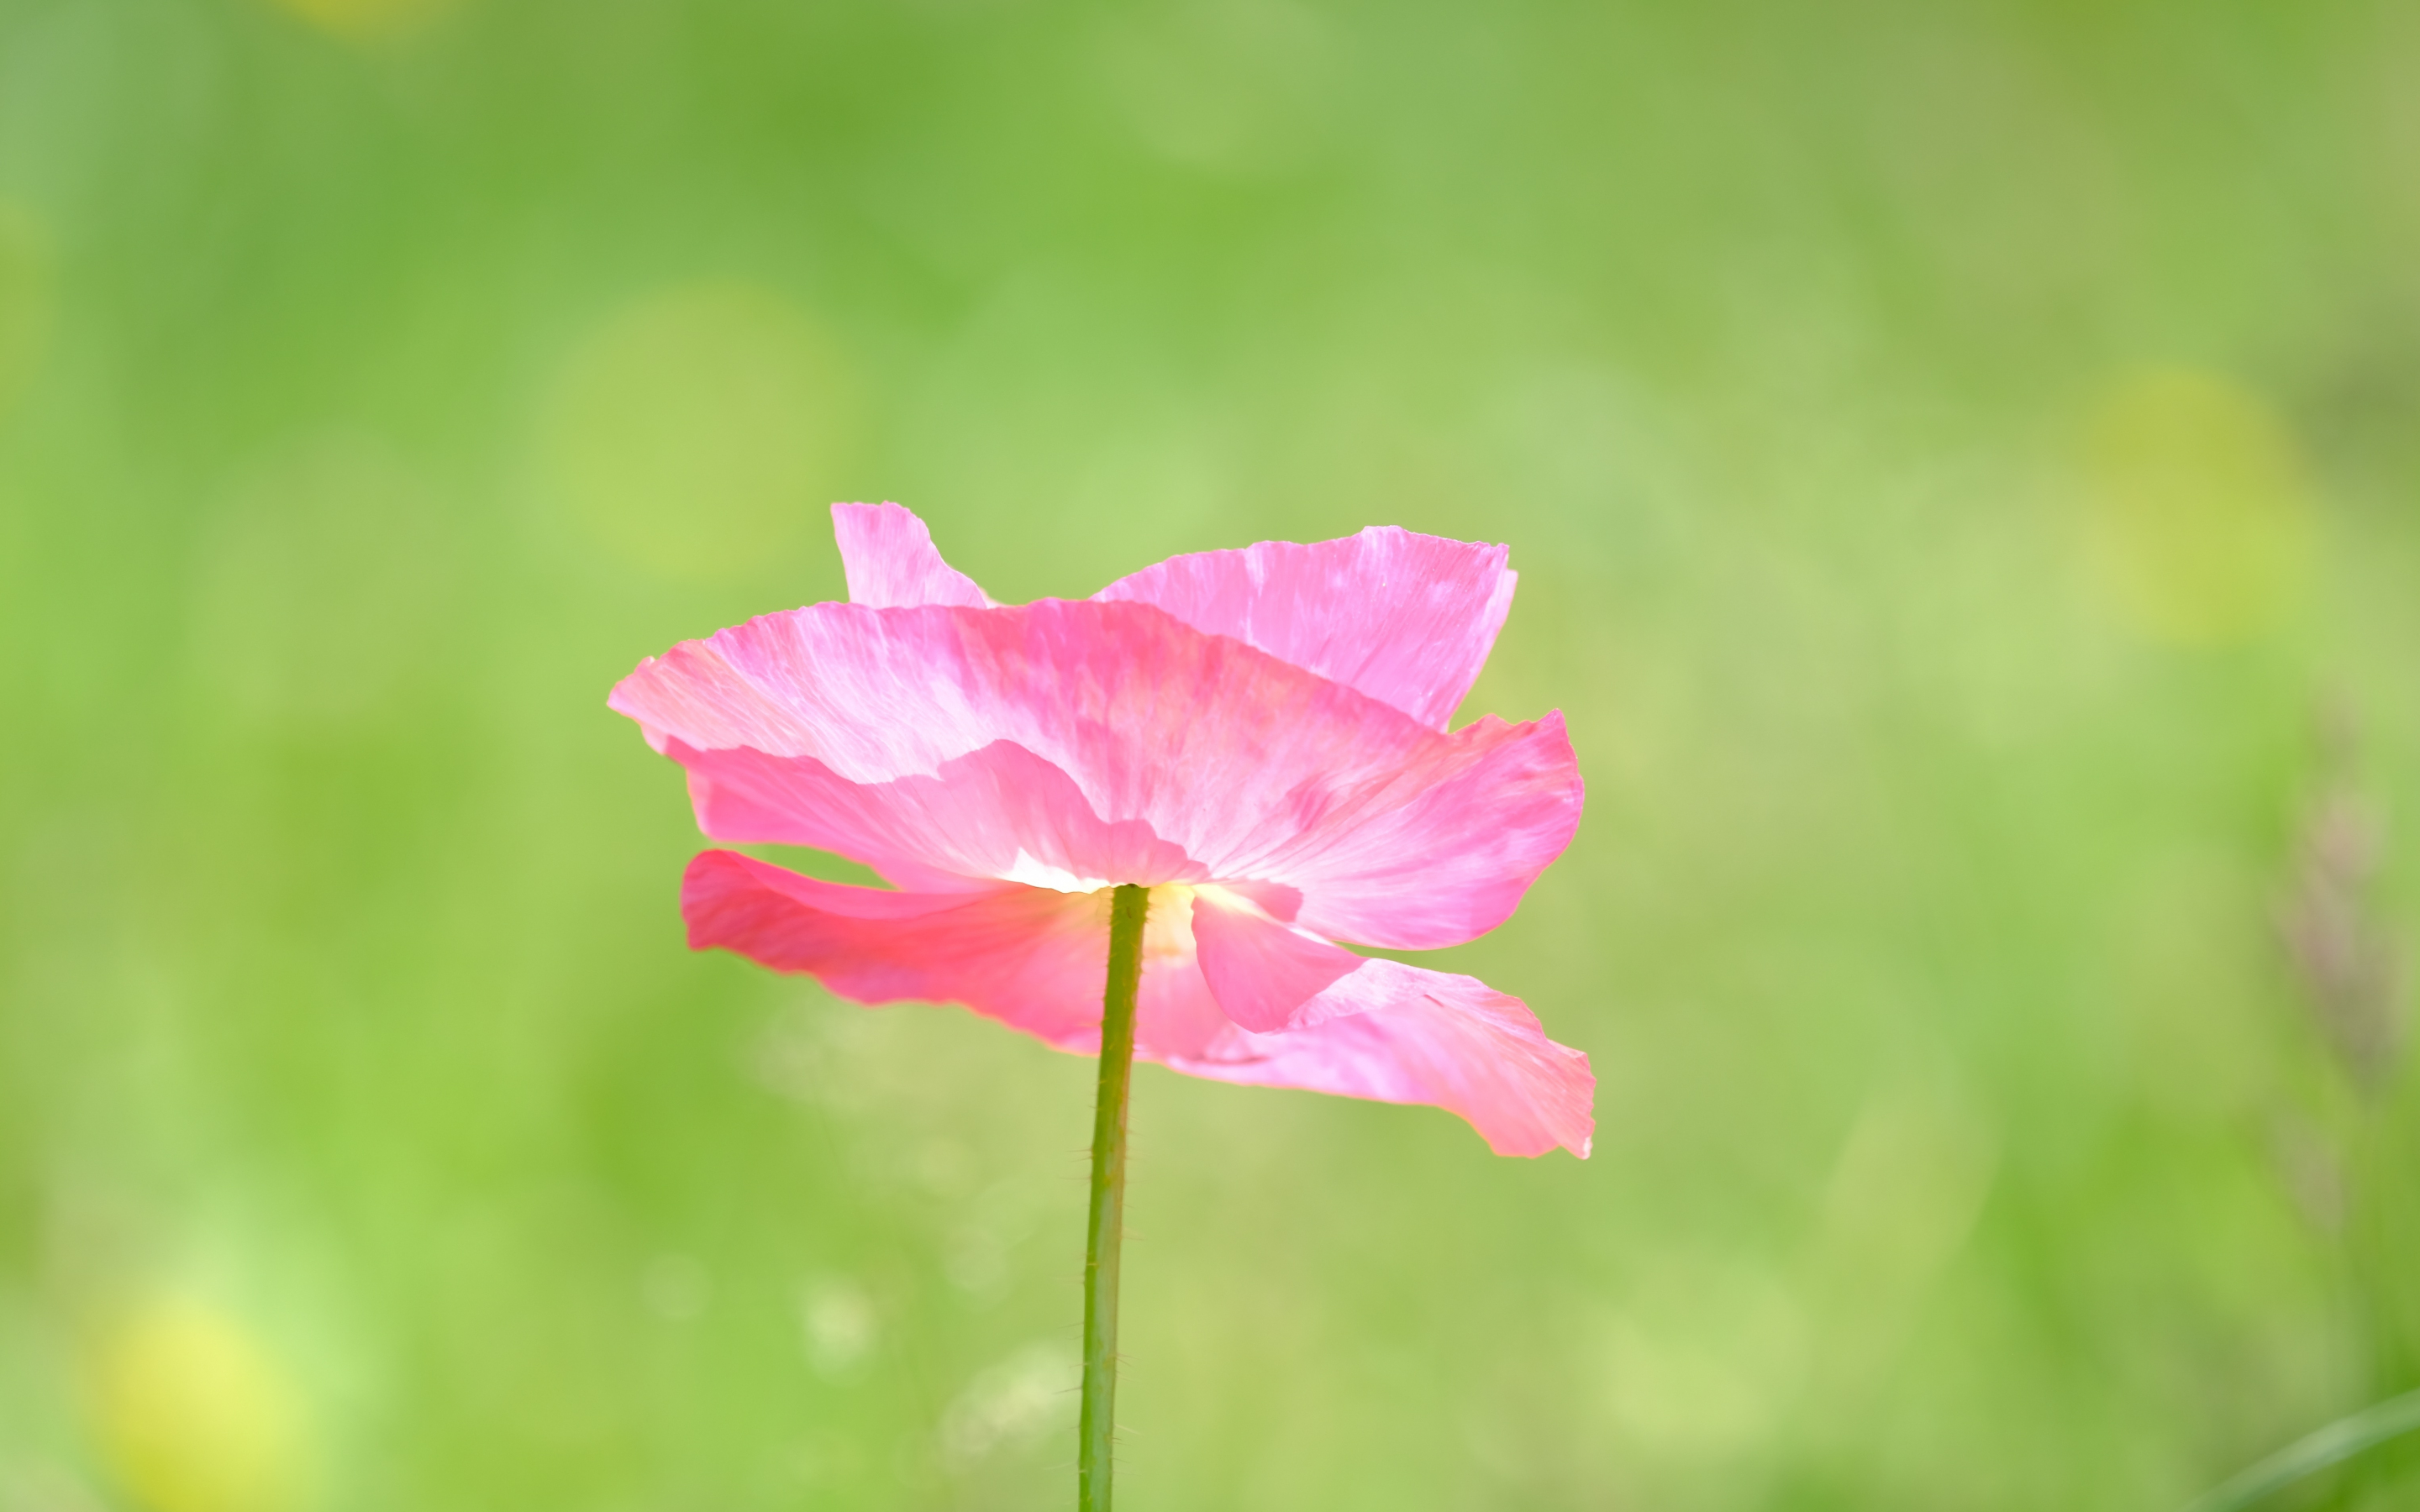 Poppy, a pink flower close up, summer, 2880x1800 wallpaper